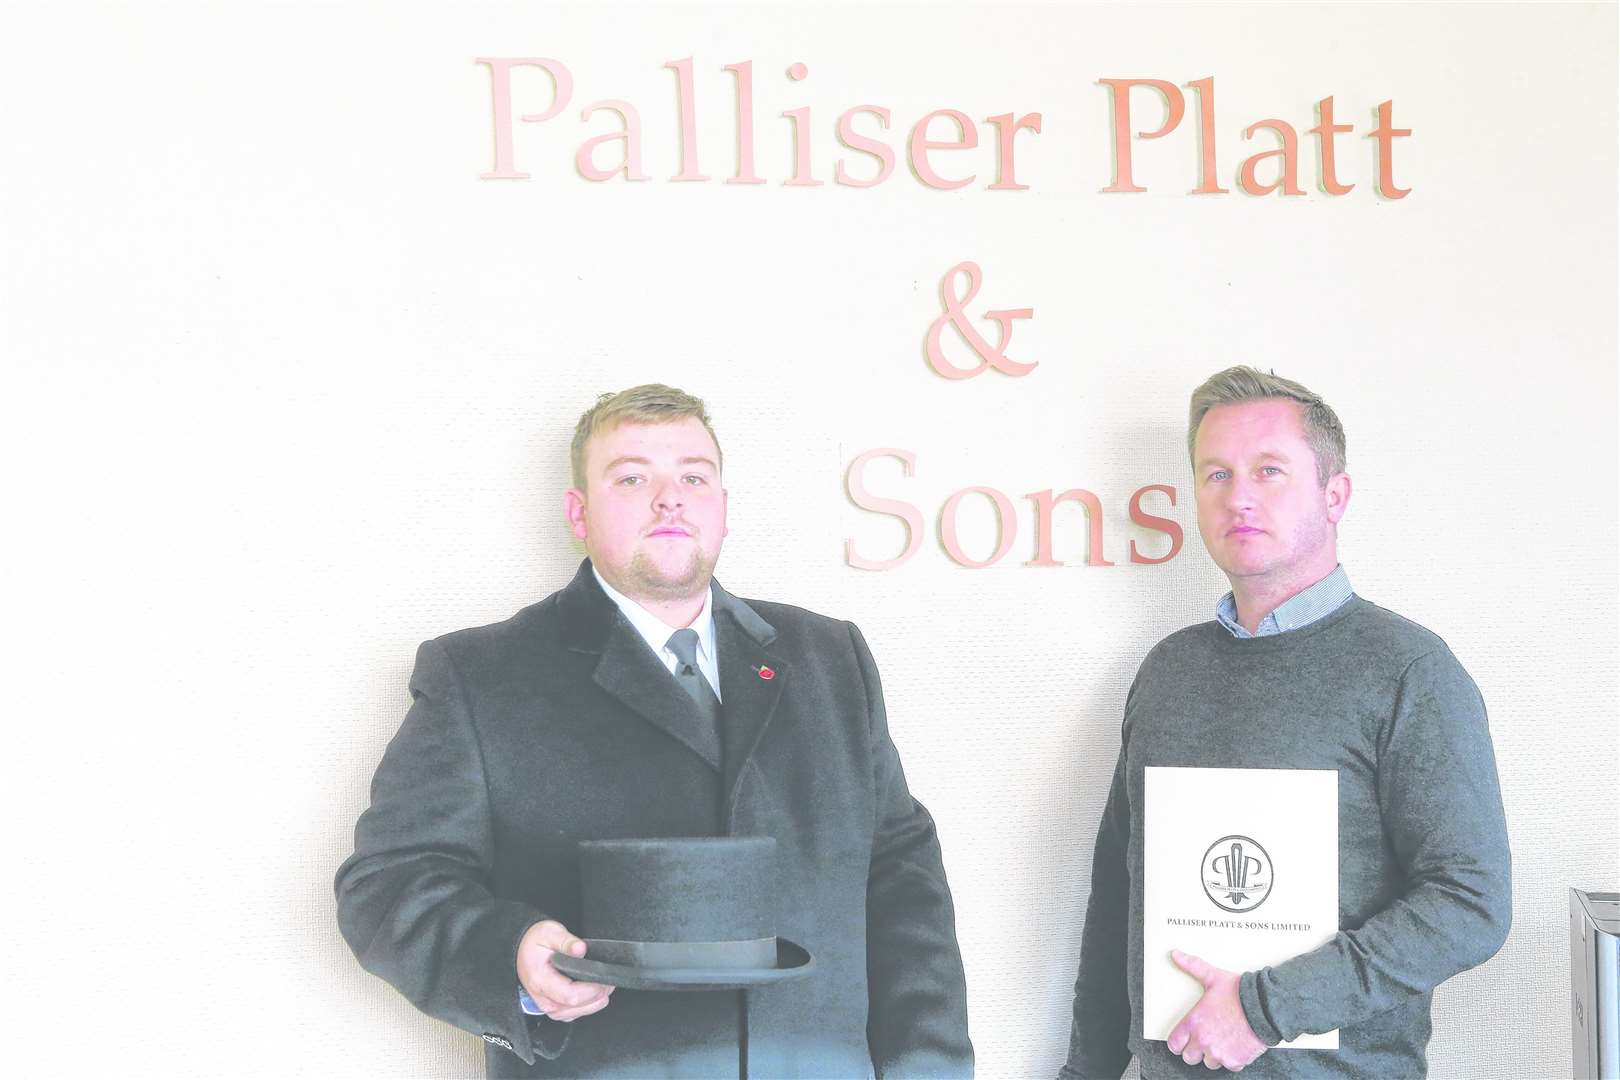 Bobby Palliser and Stephen Platt of Palliser Platt and Sons. Stock photo